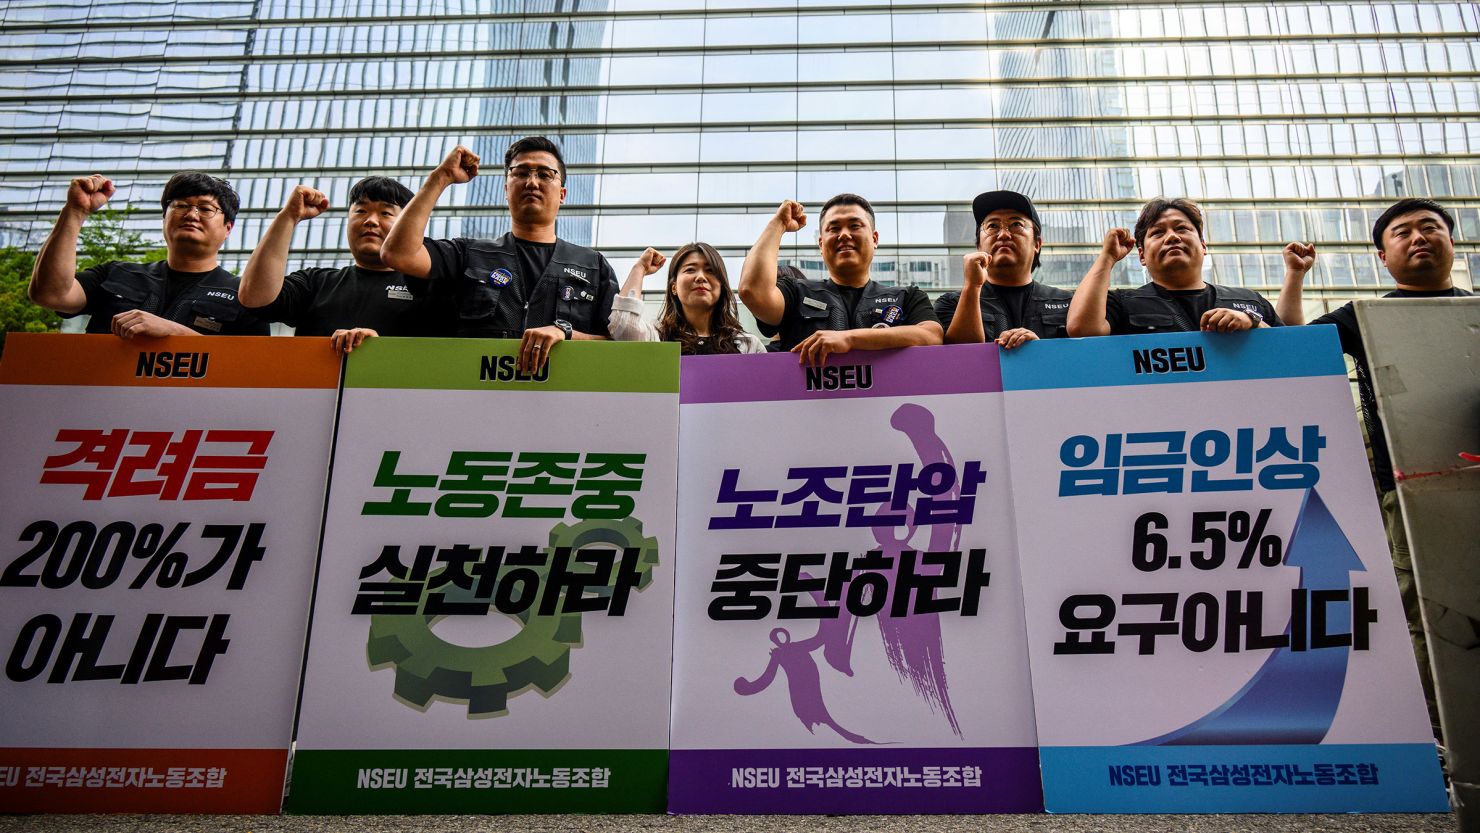 أول إضراب للعاملين في سامسونغ في كوريا الجنوبية